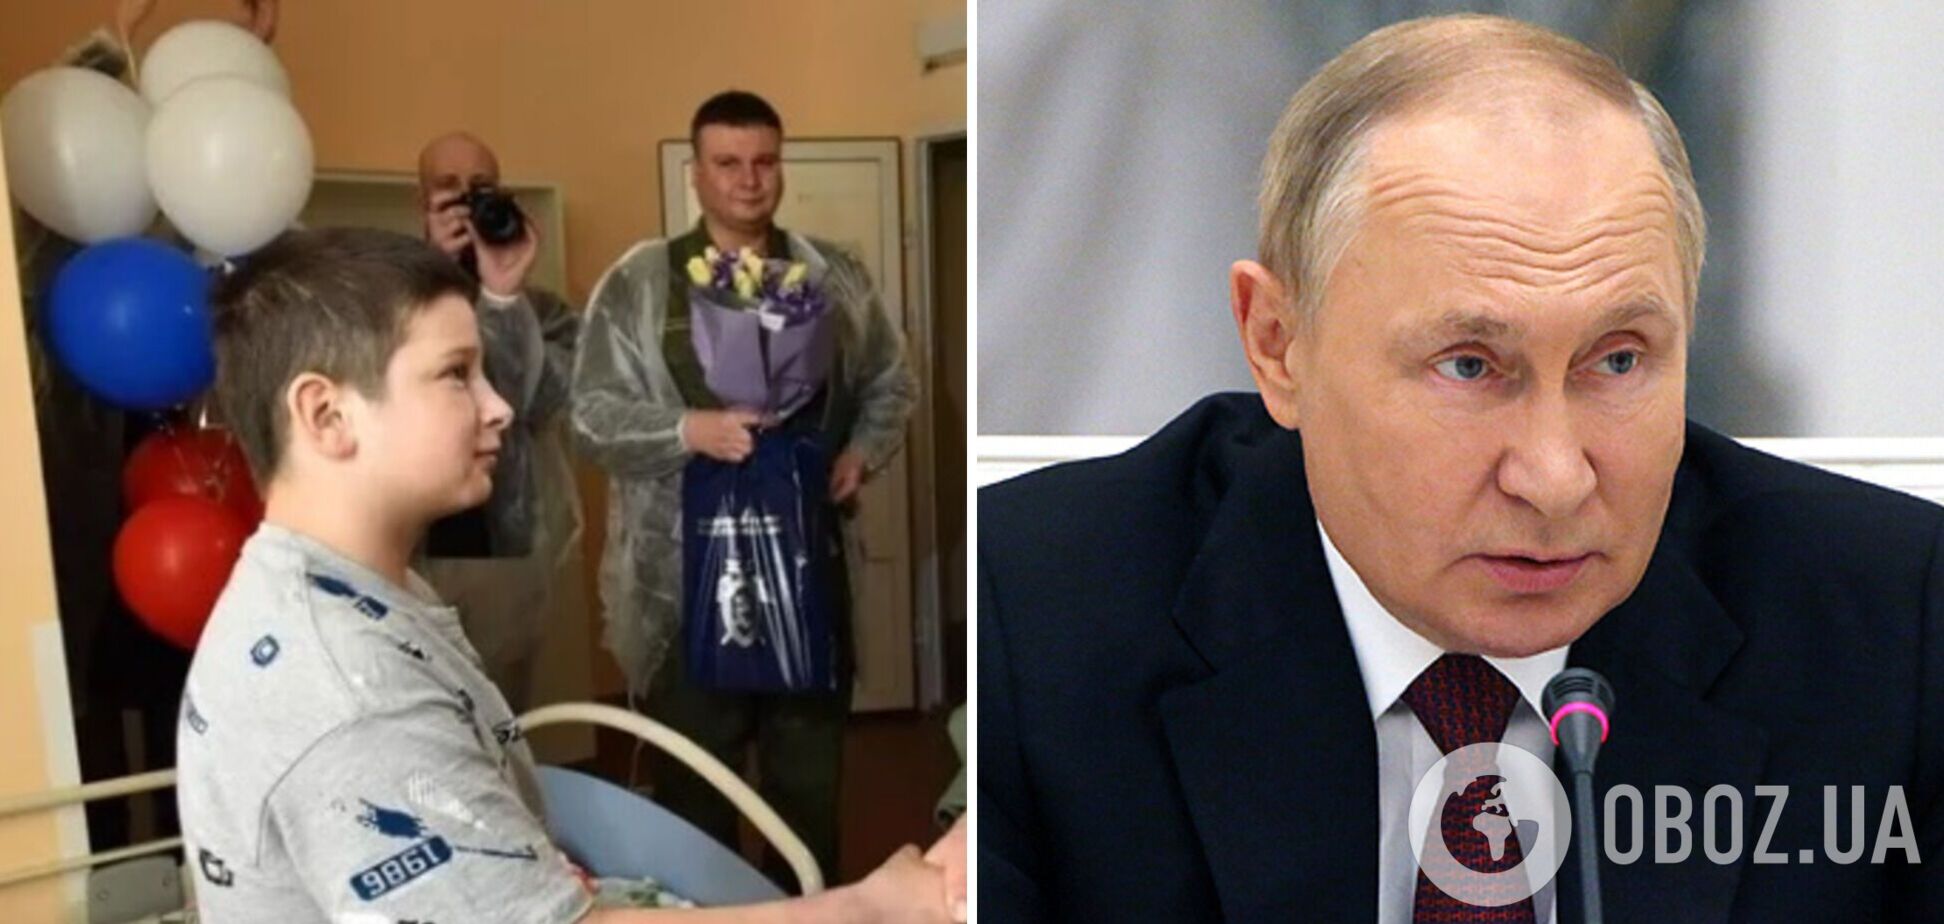 Путин наградил медалью мальчика Федора, который 'прославился' из-за мифической 'украинской ДРГ' в Брянской области